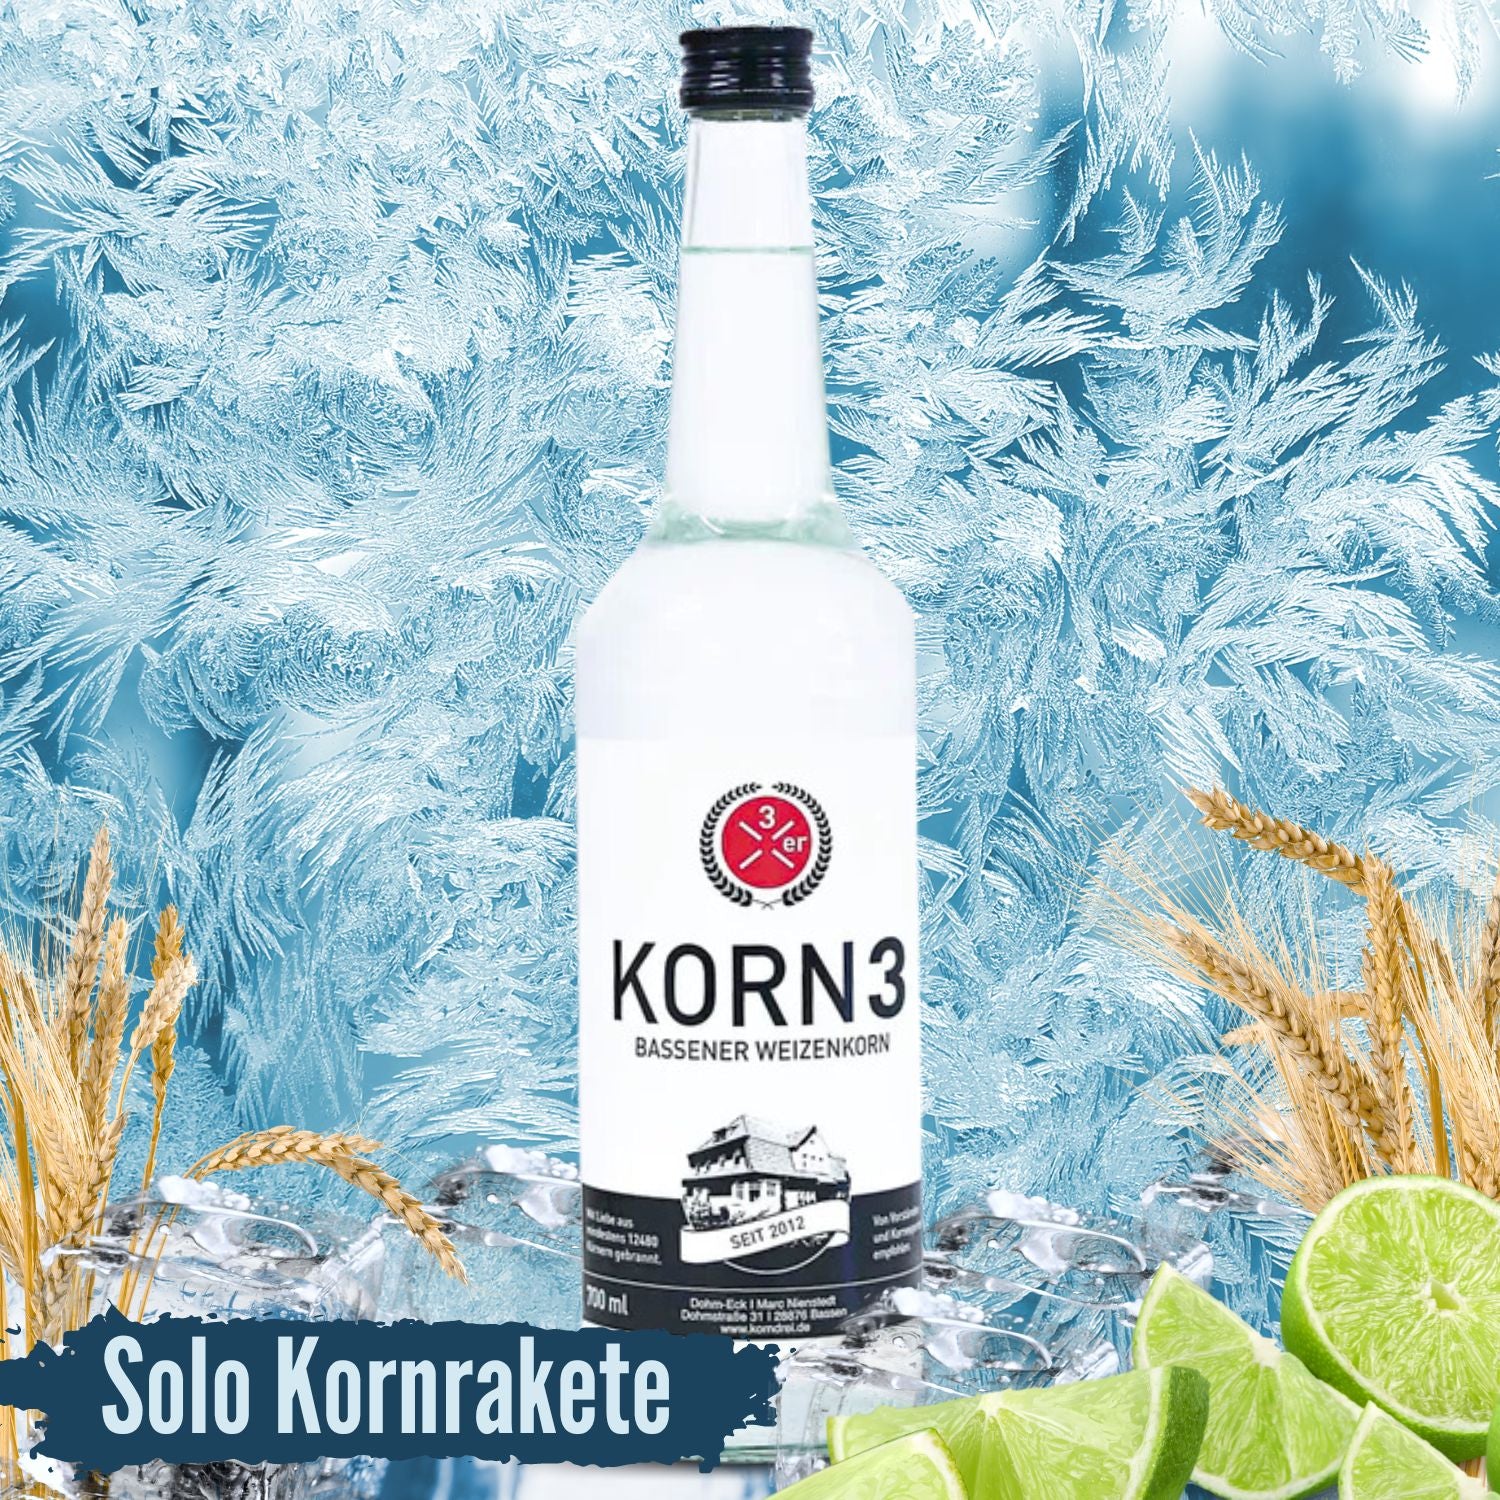 KORN 3 - Bassener Weizenkorn I 1 Flasche I Solo Kornrakete